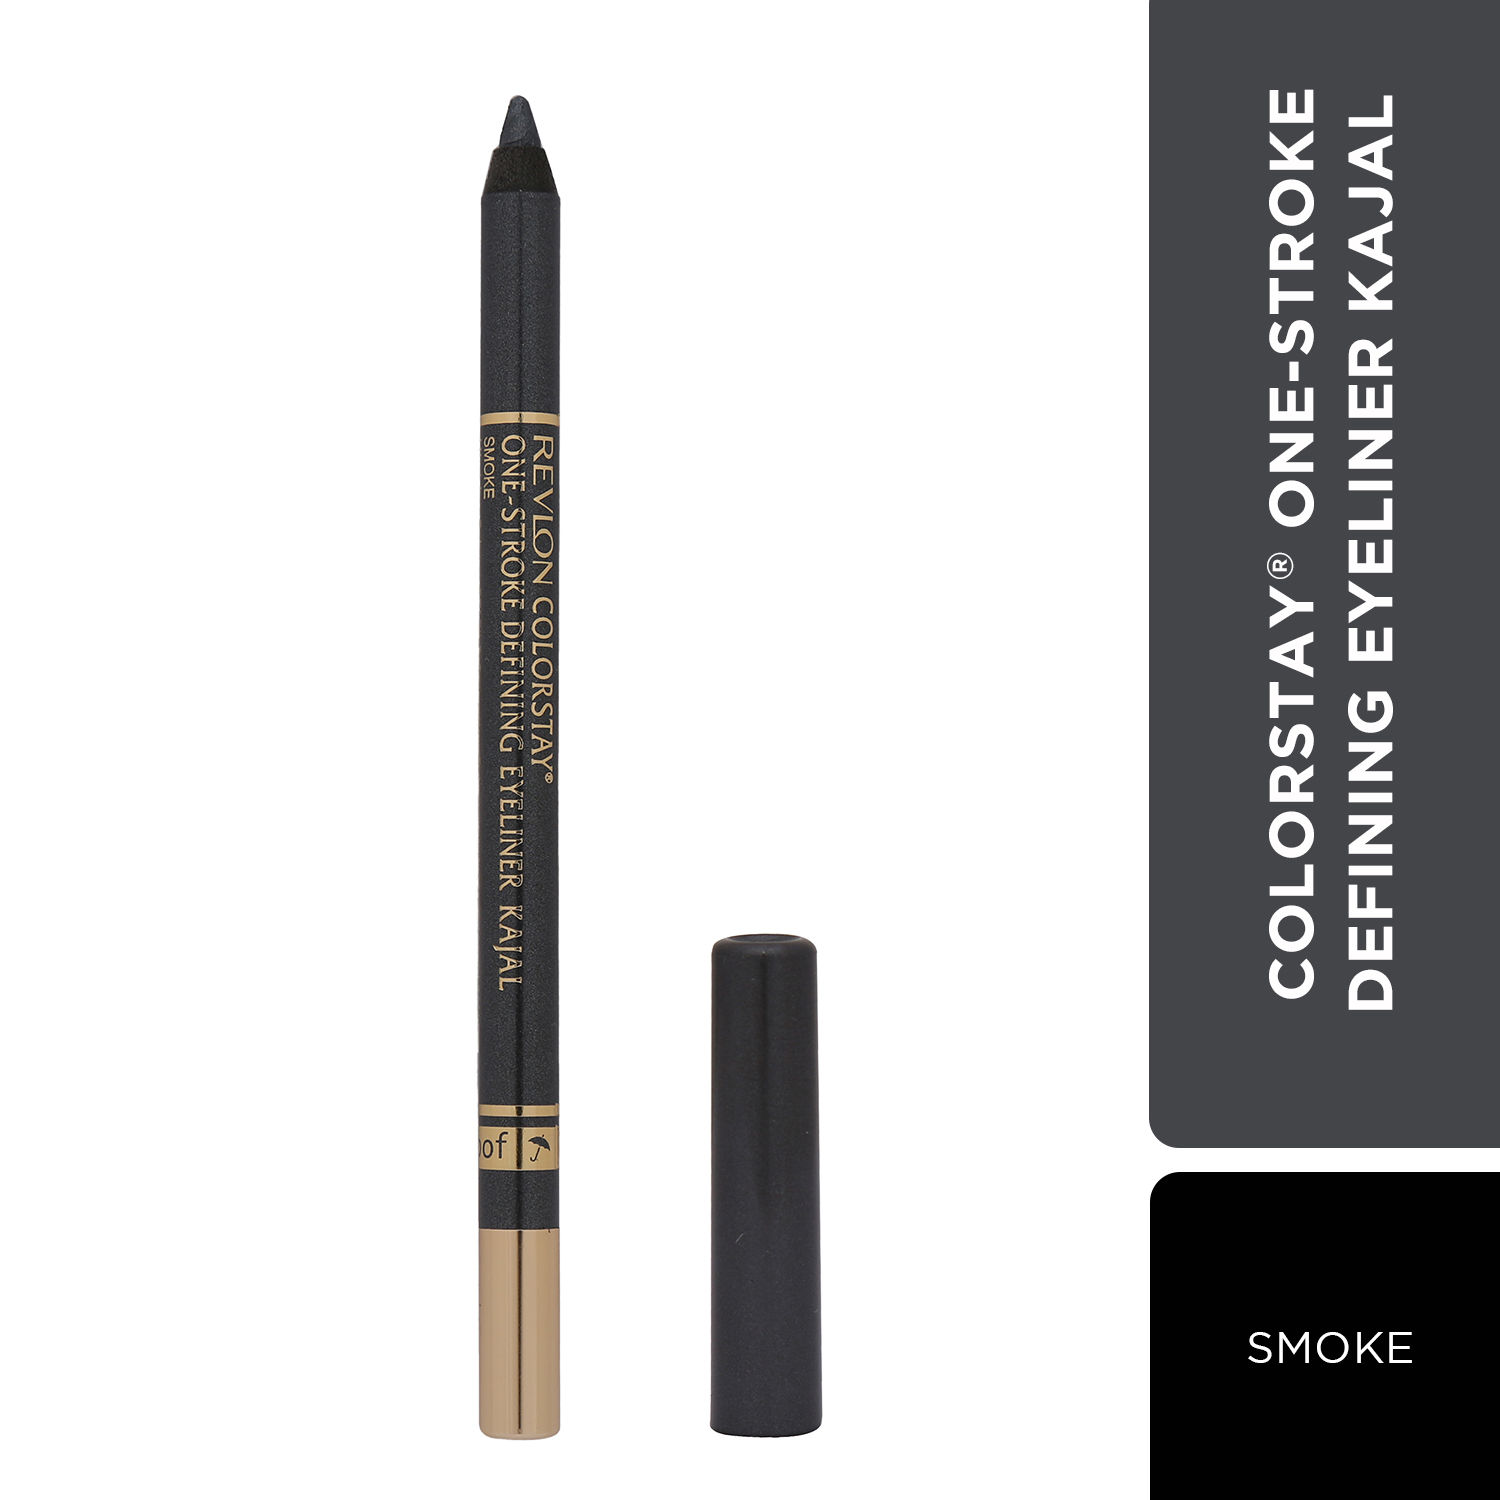 Revlon Colorstay One-Stroke Defining Eyeliner Kajal + Free Sharpener - Smoke